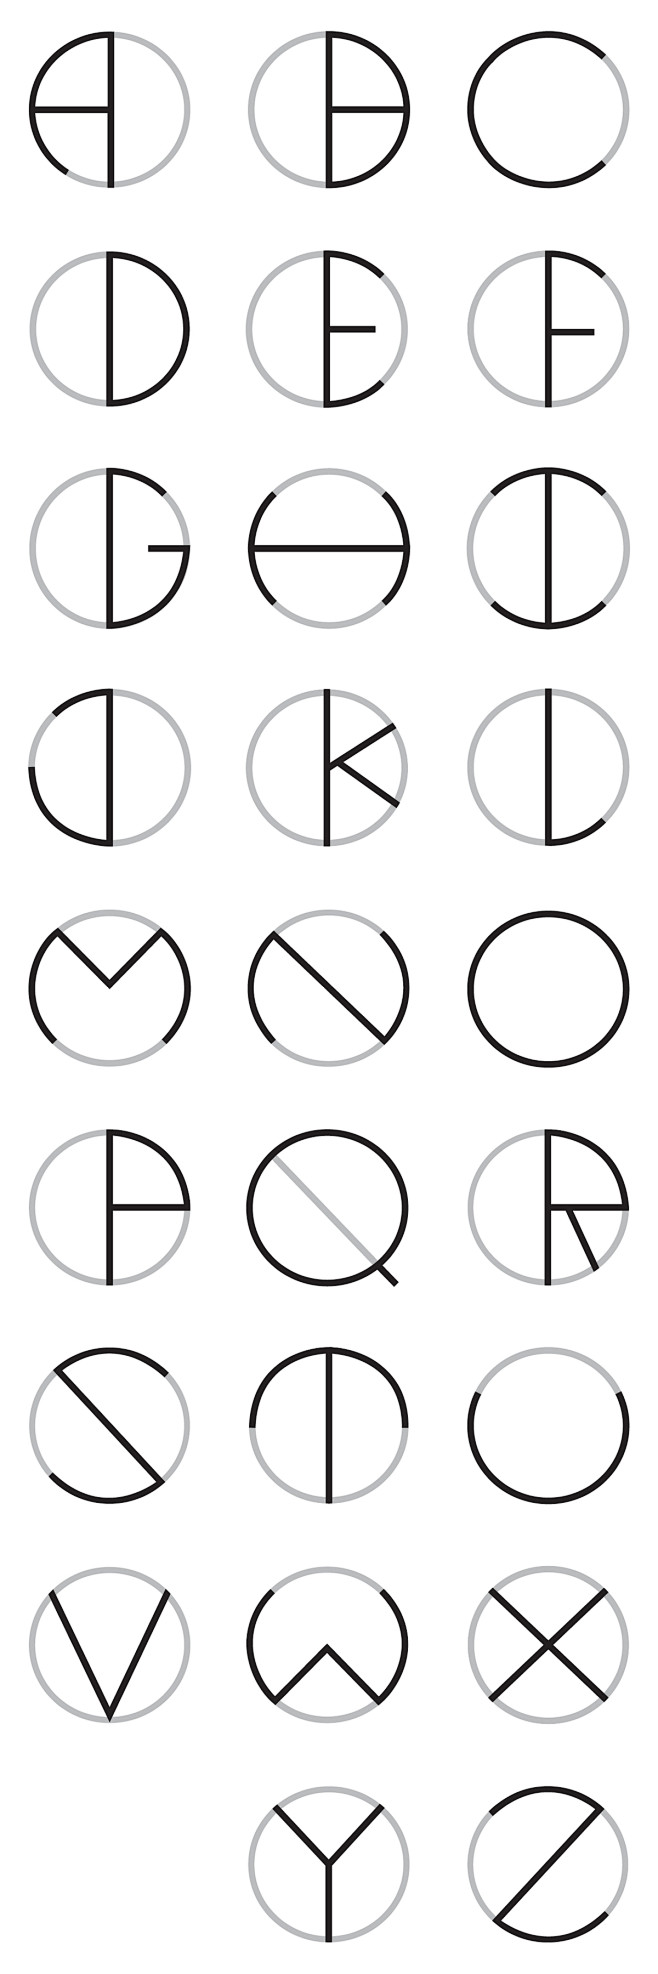 circle typeface : a ...